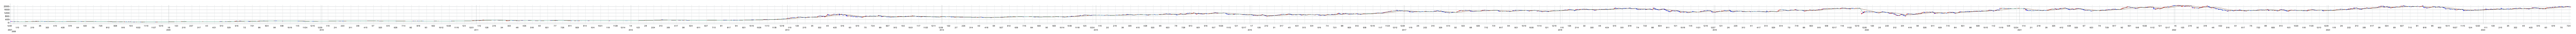 プレサンスコーポレーションの株価チャート